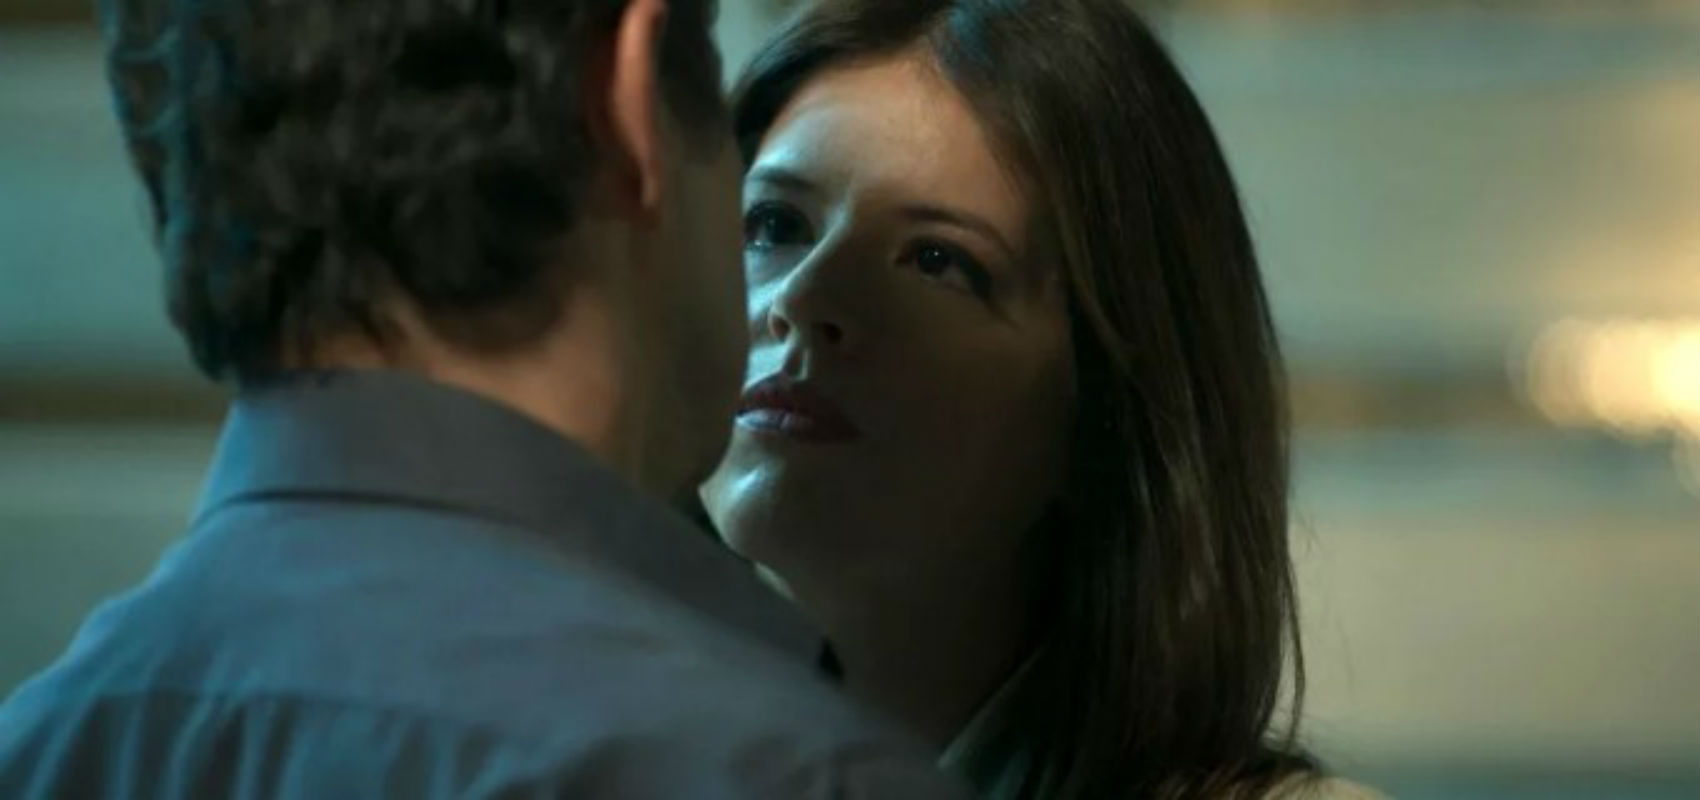 Em "Pega Pega", Malagueta pede ajuda a Maria Pia para incriminar Cíntia no roubo ao Carioca Palace.